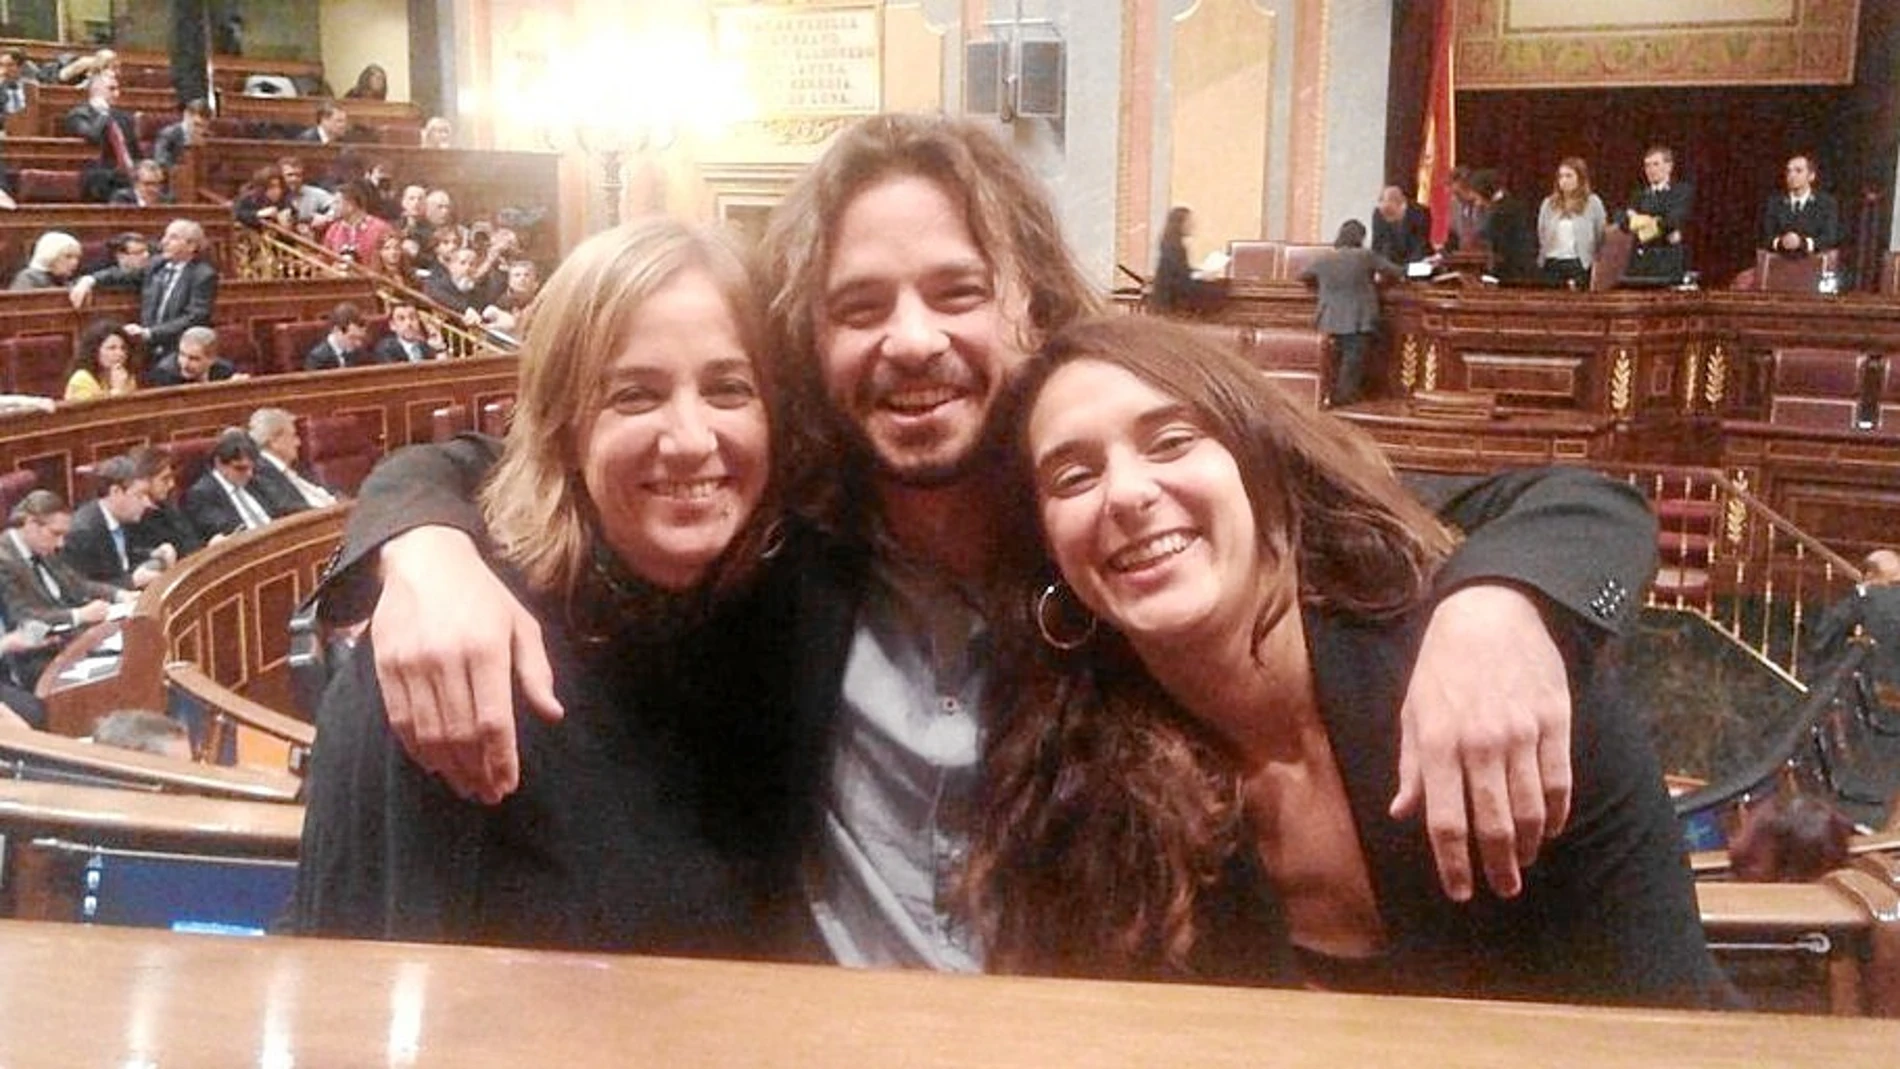 El diputado de Podemos Miguel Vila, con sus dos compañeras de la bancada morada Tania Sánchez y Noelia Vera